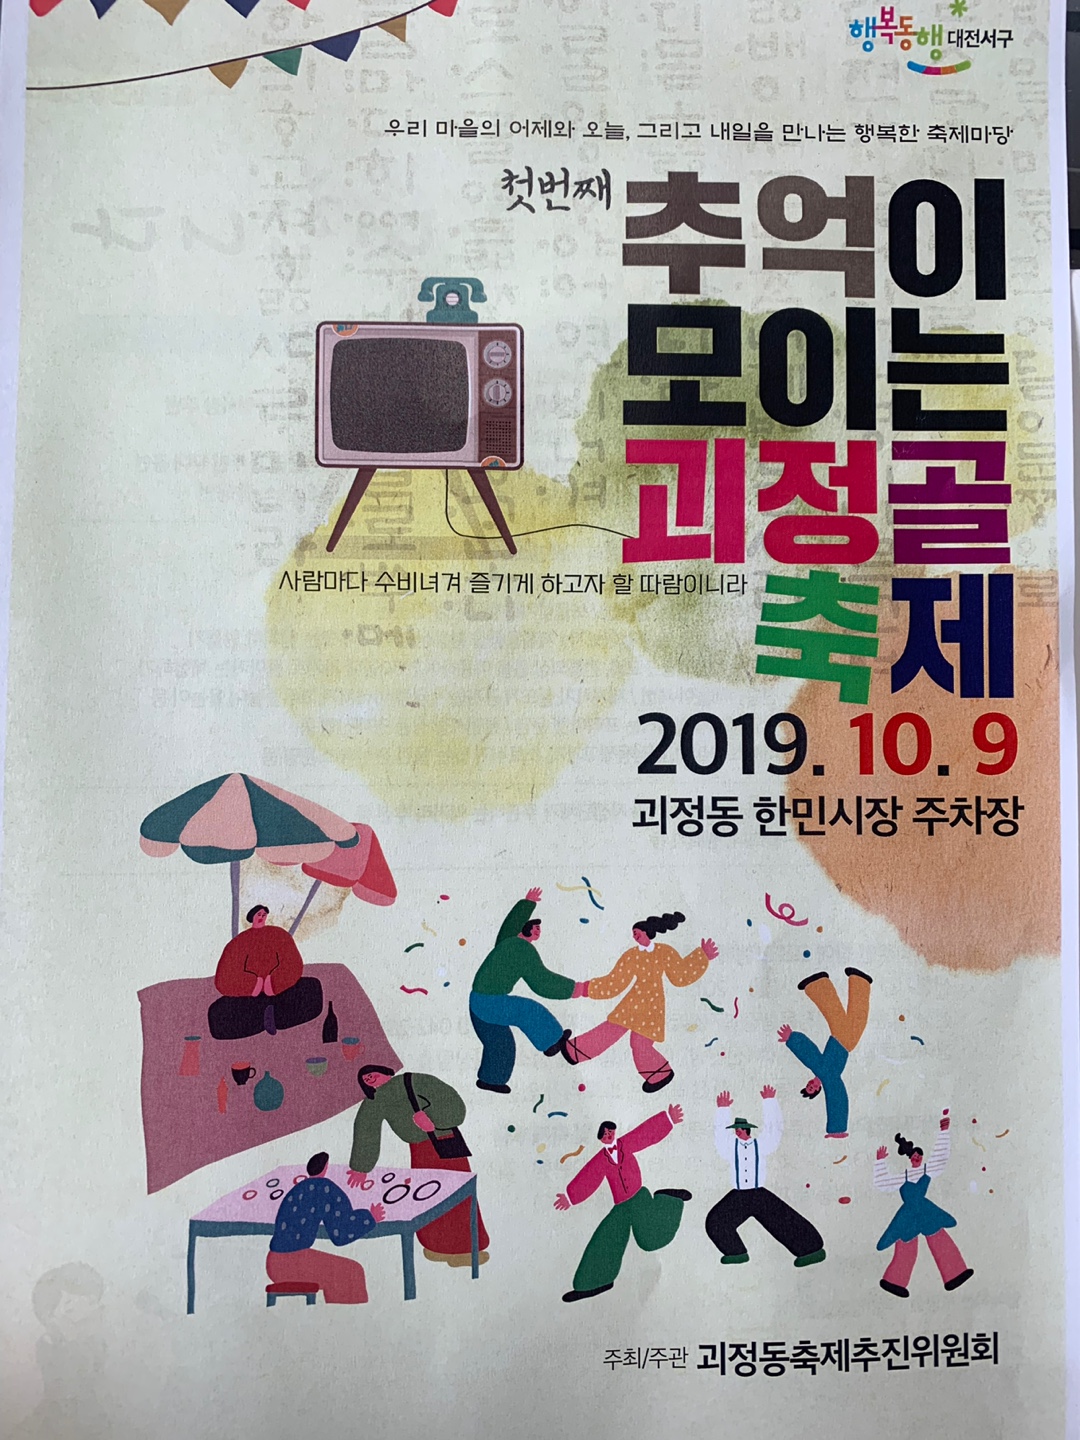 추억이 모이는 괴정골 축제(19.10.9)- 한민시장 공영 제 2주차장